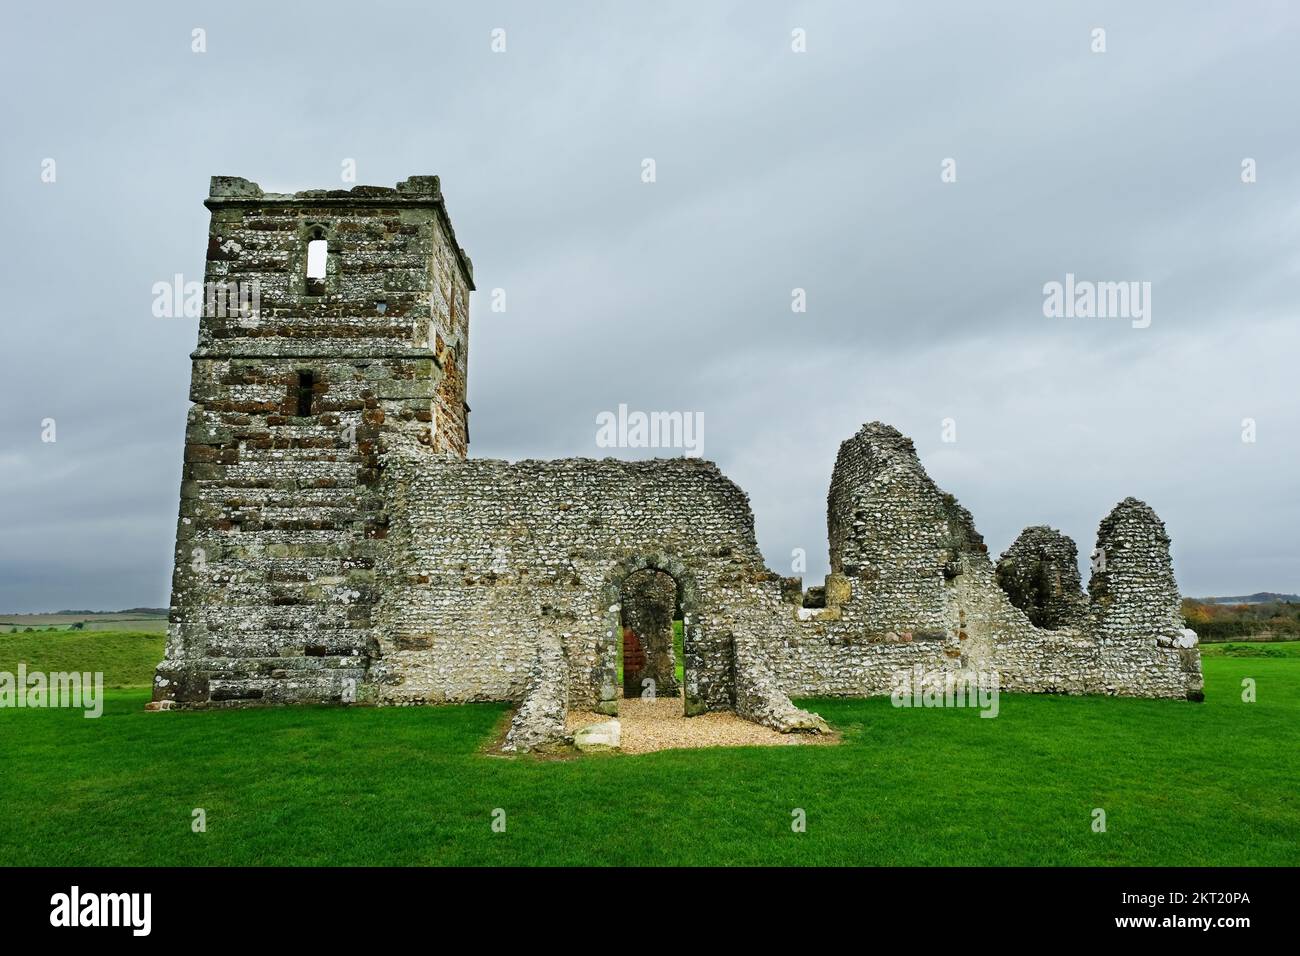 Knowlton, une église médiévale construite dans un henge préhistorique, Dorset, Royaume-Uni - John Gollop Banque D'Images